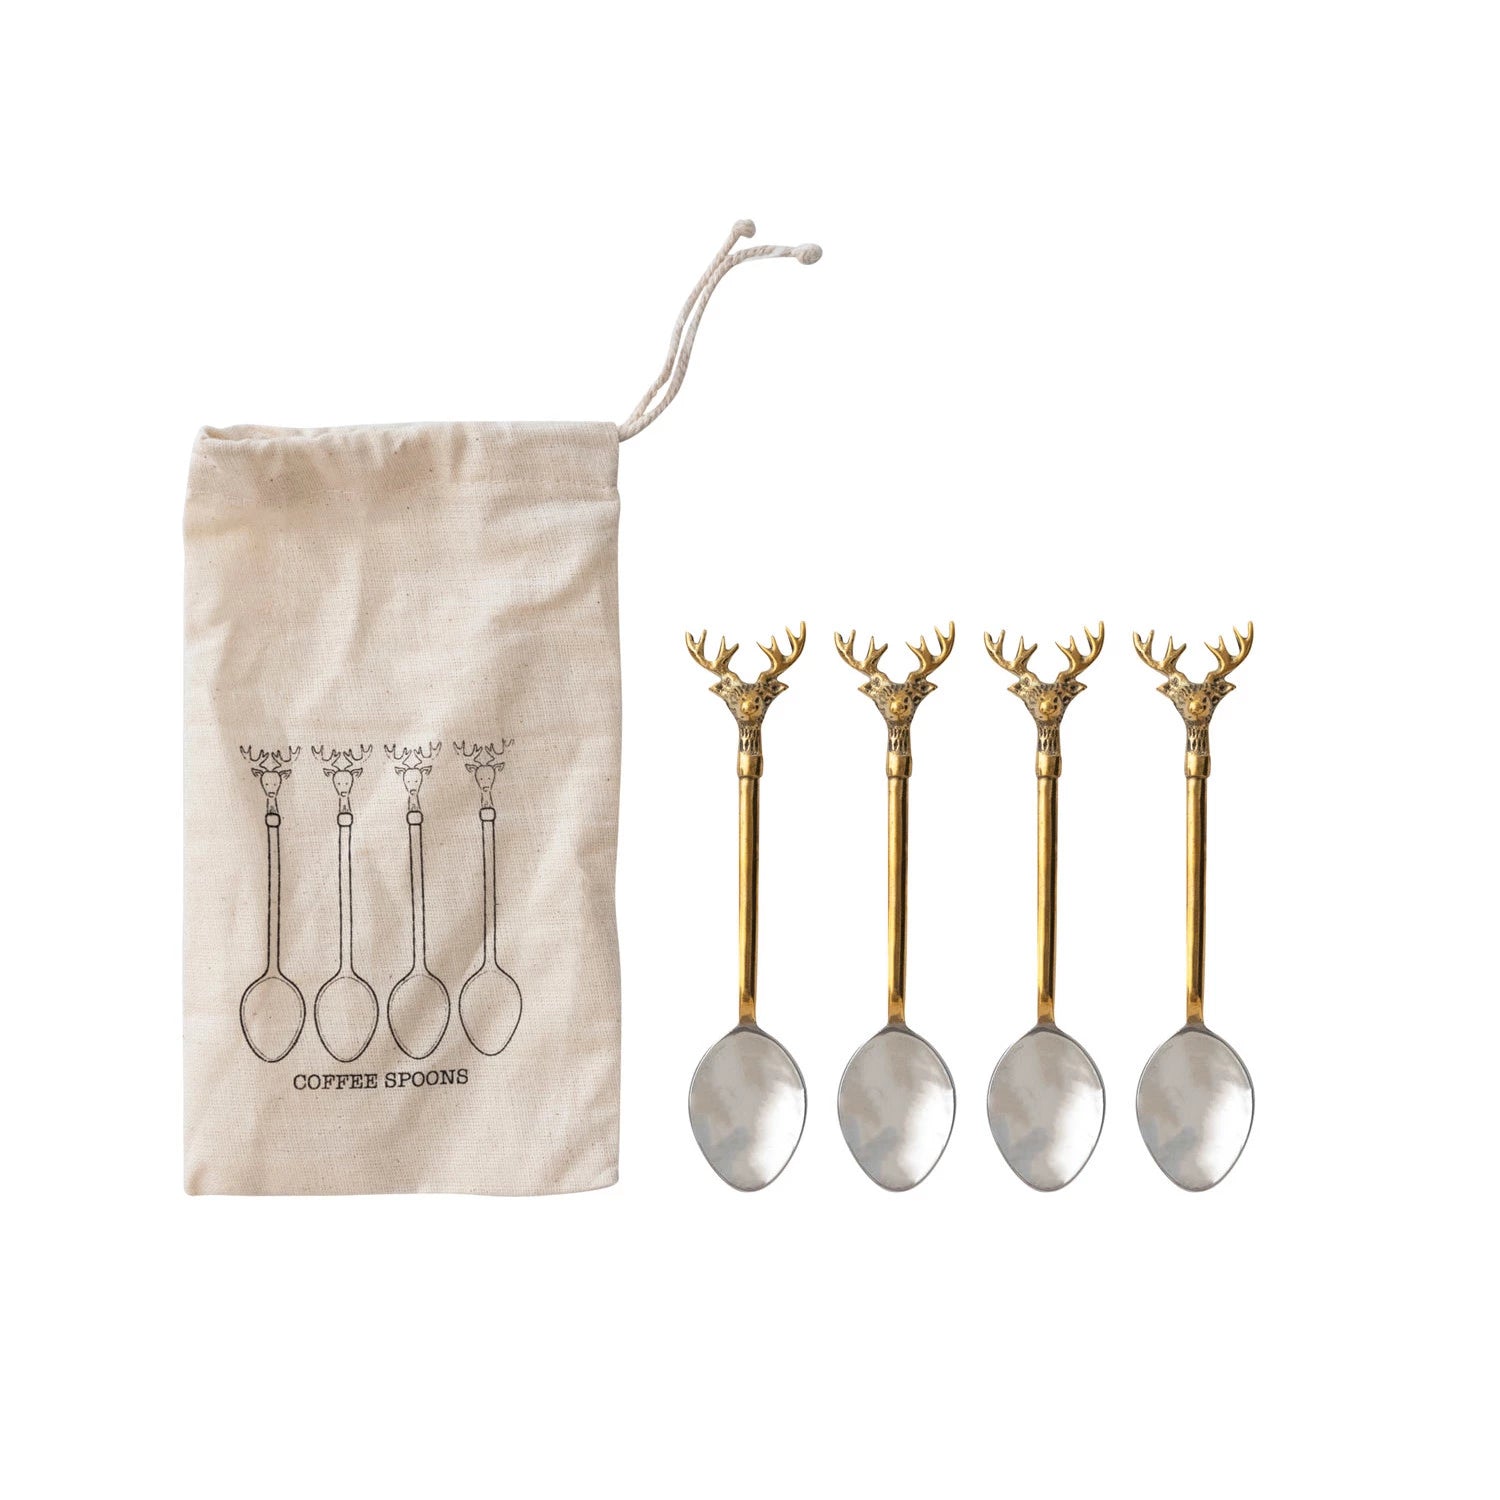 Reindeer Sterling Silver & Brass Coffee Spoons - Set Of 4 - FINAL SALE